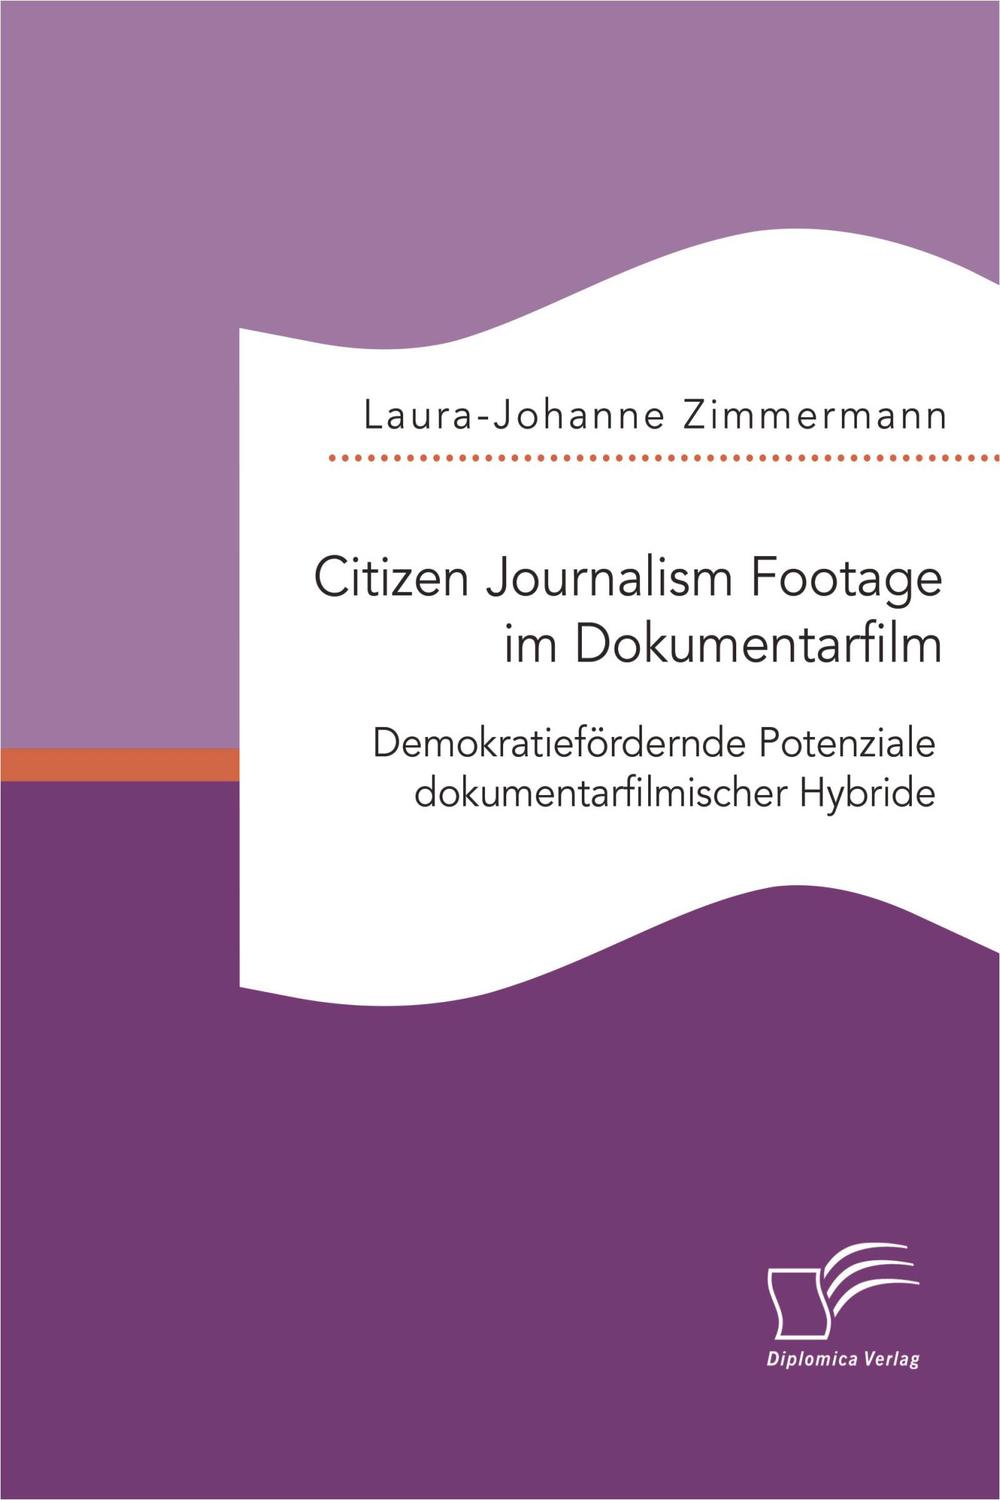 Citizen Journalism Footage im Dokumentarfilm. Demokratiefördernde Potenziale dokumentarfilmischer Hybride - Laura-Johanne Zimmermann